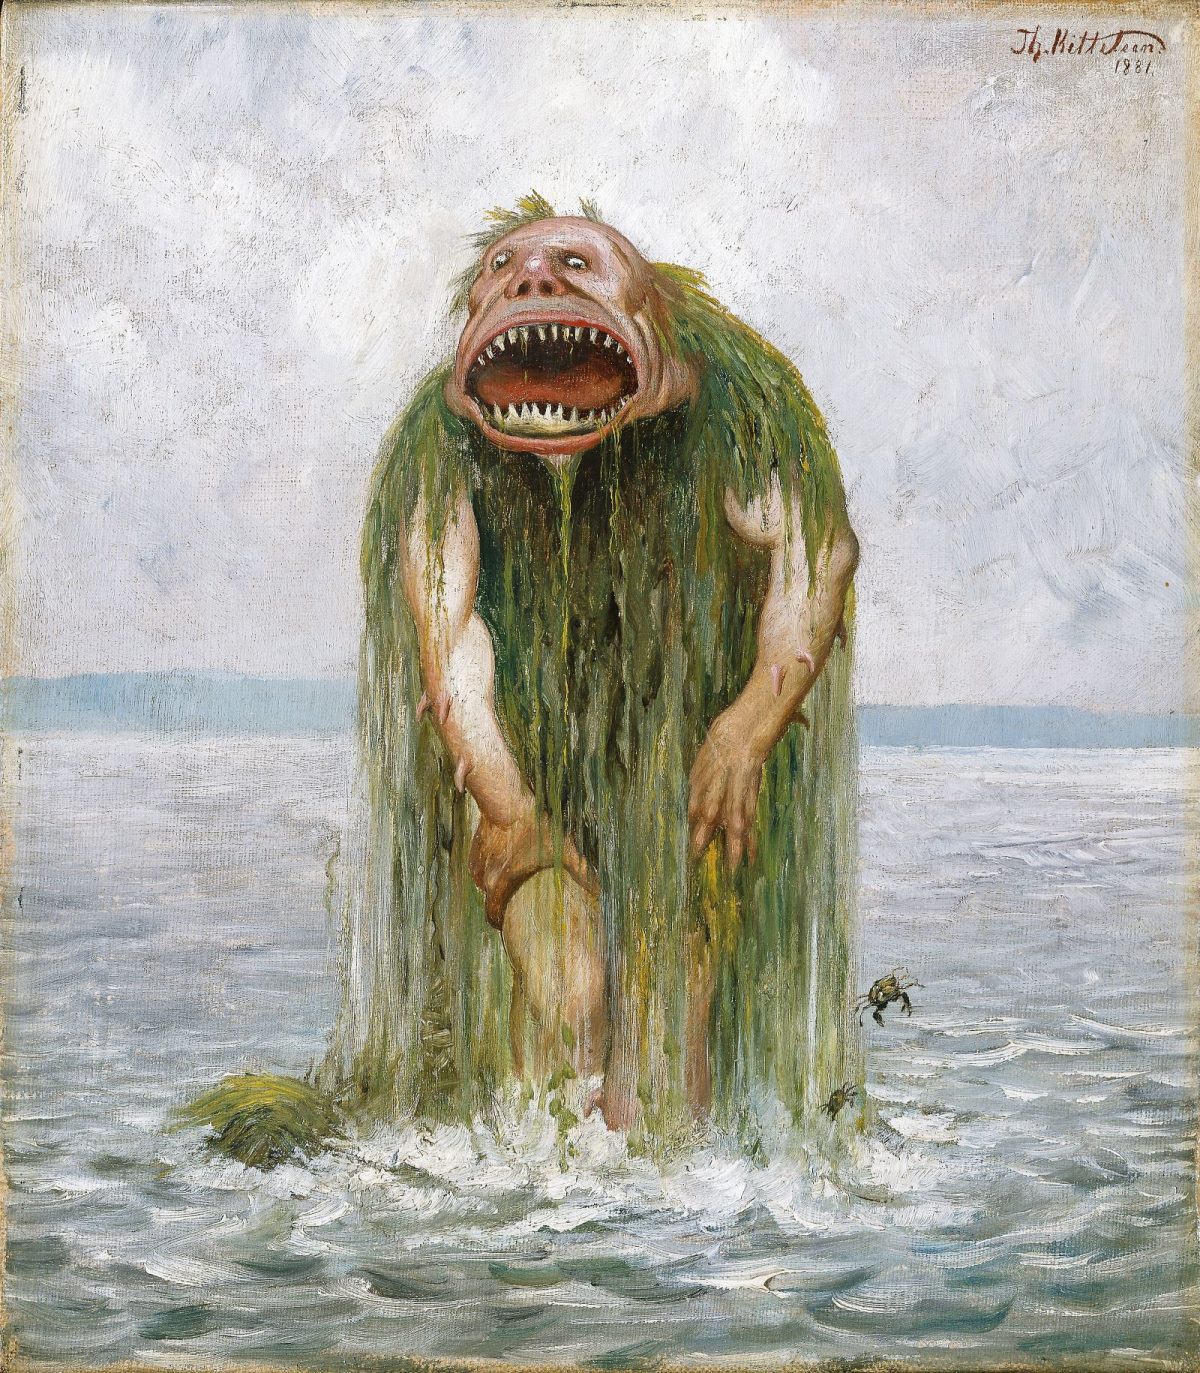 Theodor Kittlesen, trolls, paintings, monsters, art, folklore